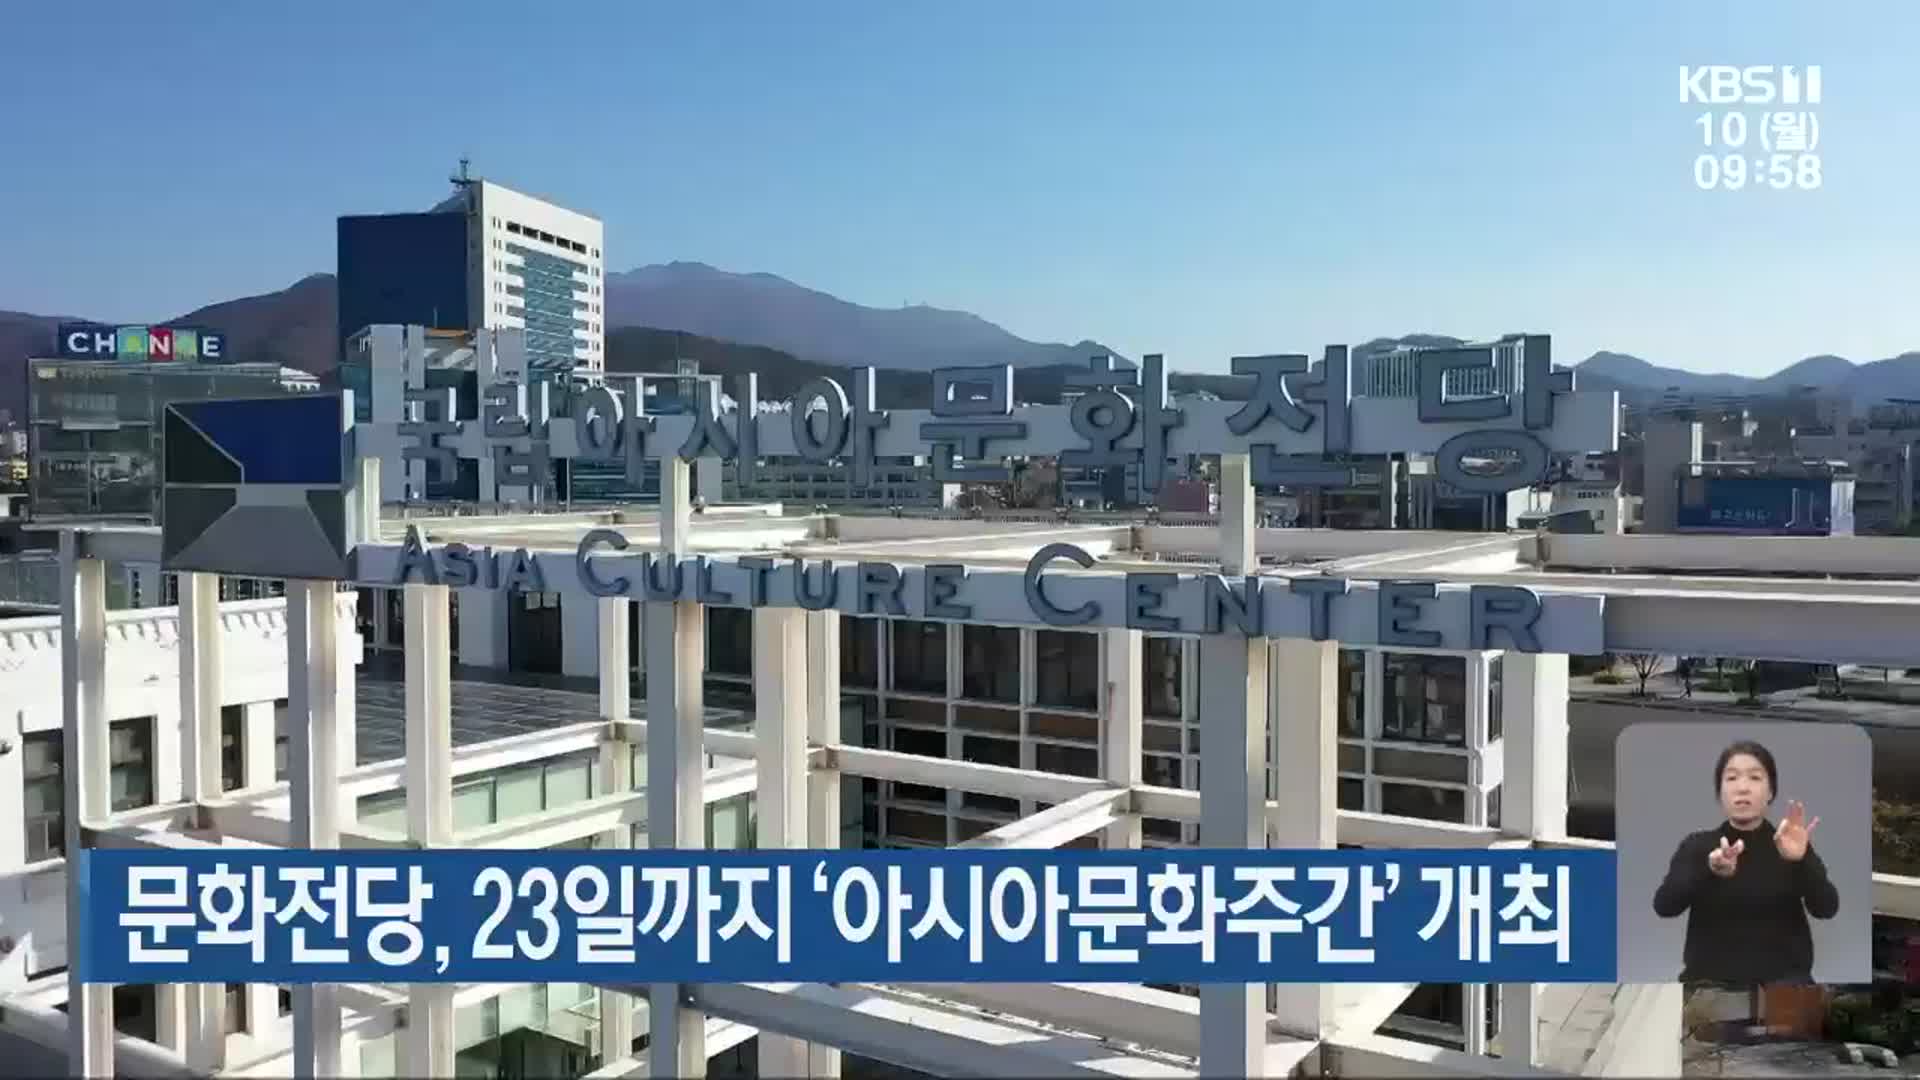 문화전당, 23일까지 ‘아시아문화주간’ 개최